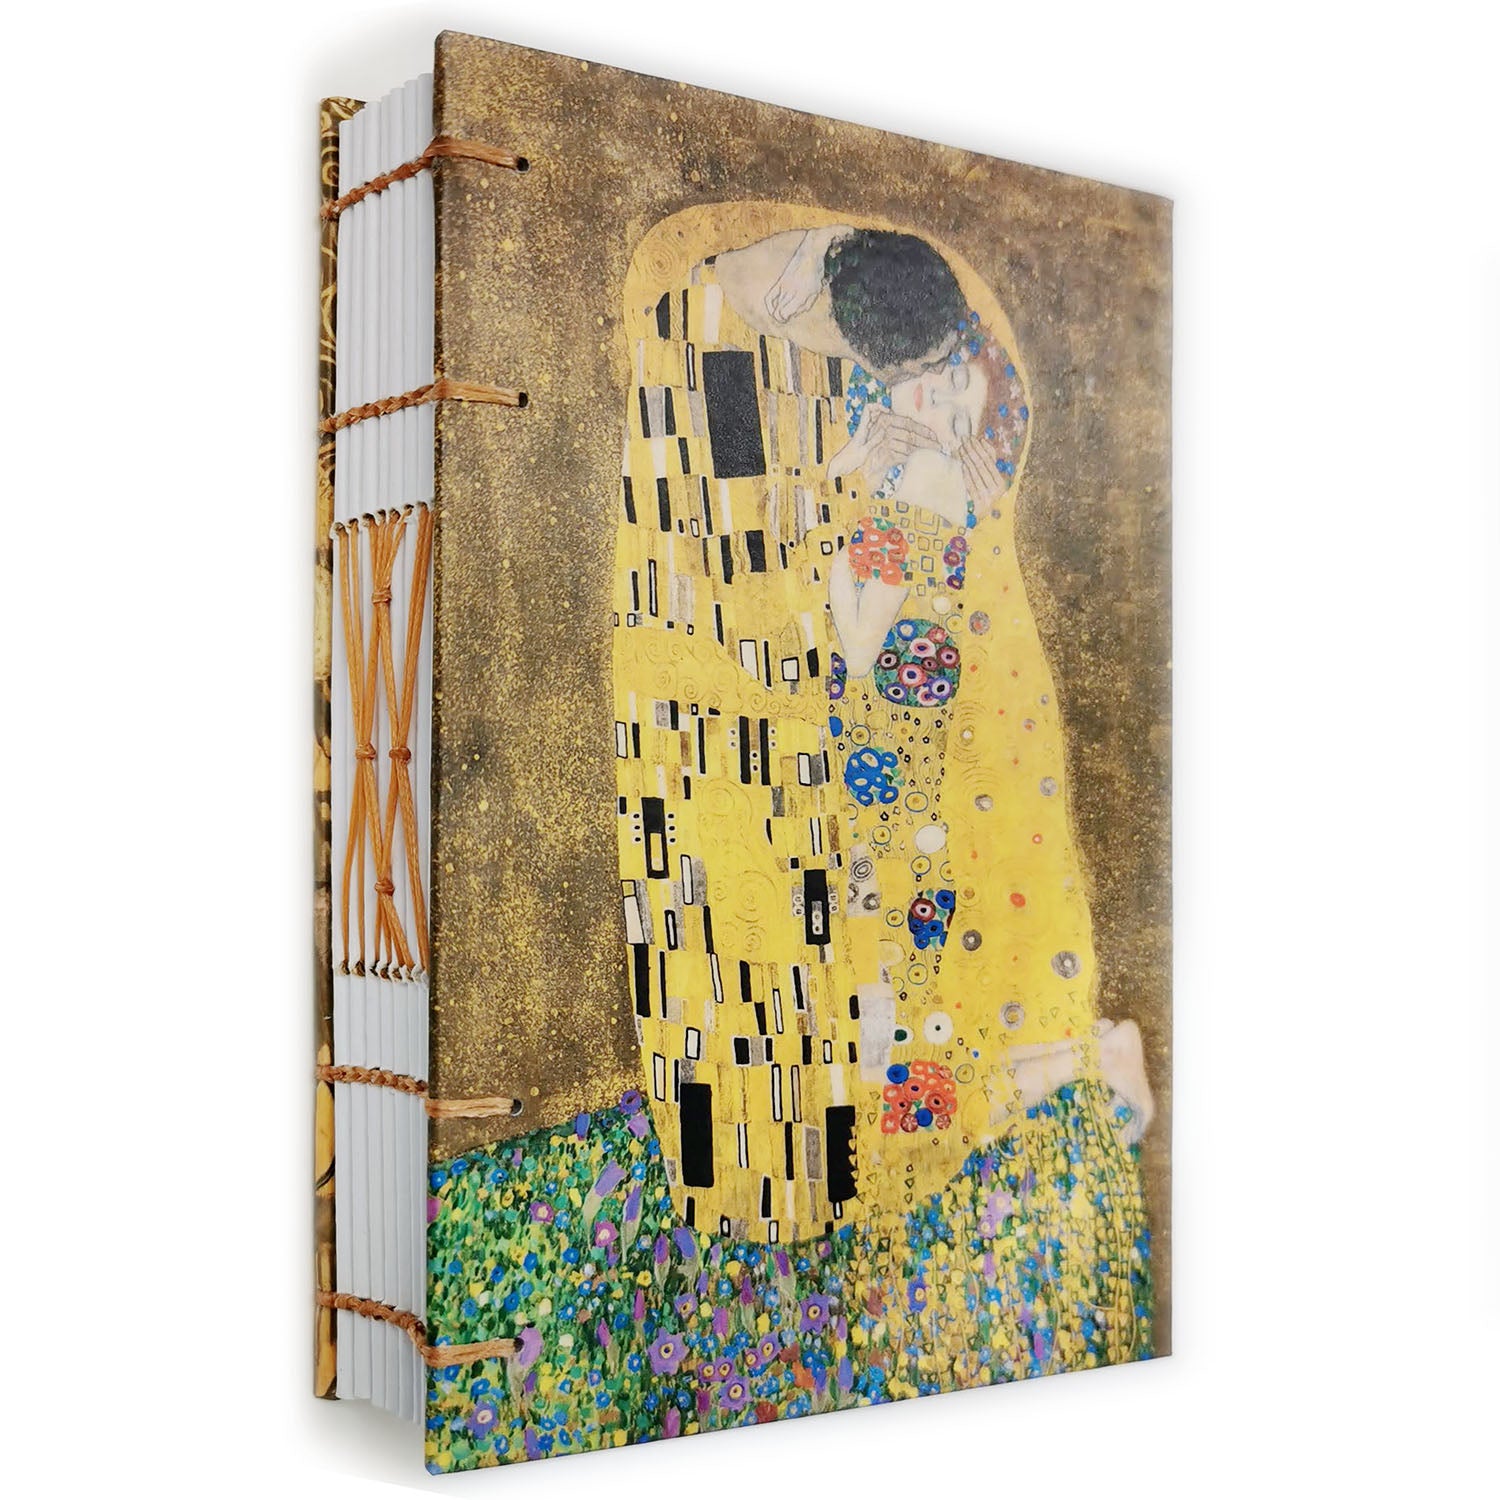 Χειροποίητo Σημειωματάριo με Βυζαντινή Βιβλιοδεσία - Klimt - The Kiss